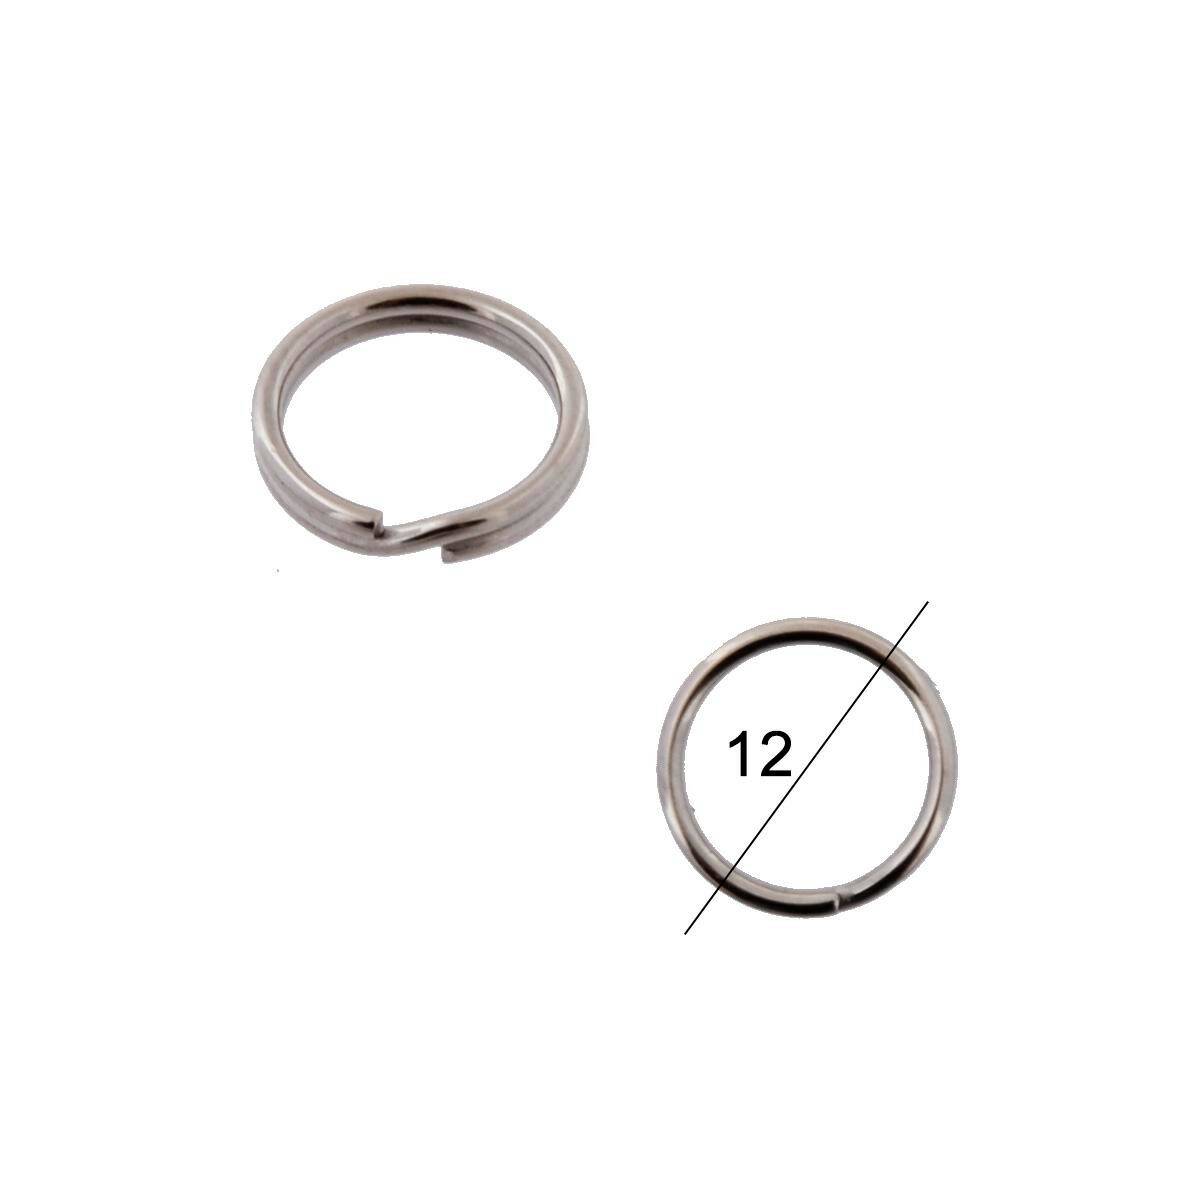 Key rings diameter 12mm